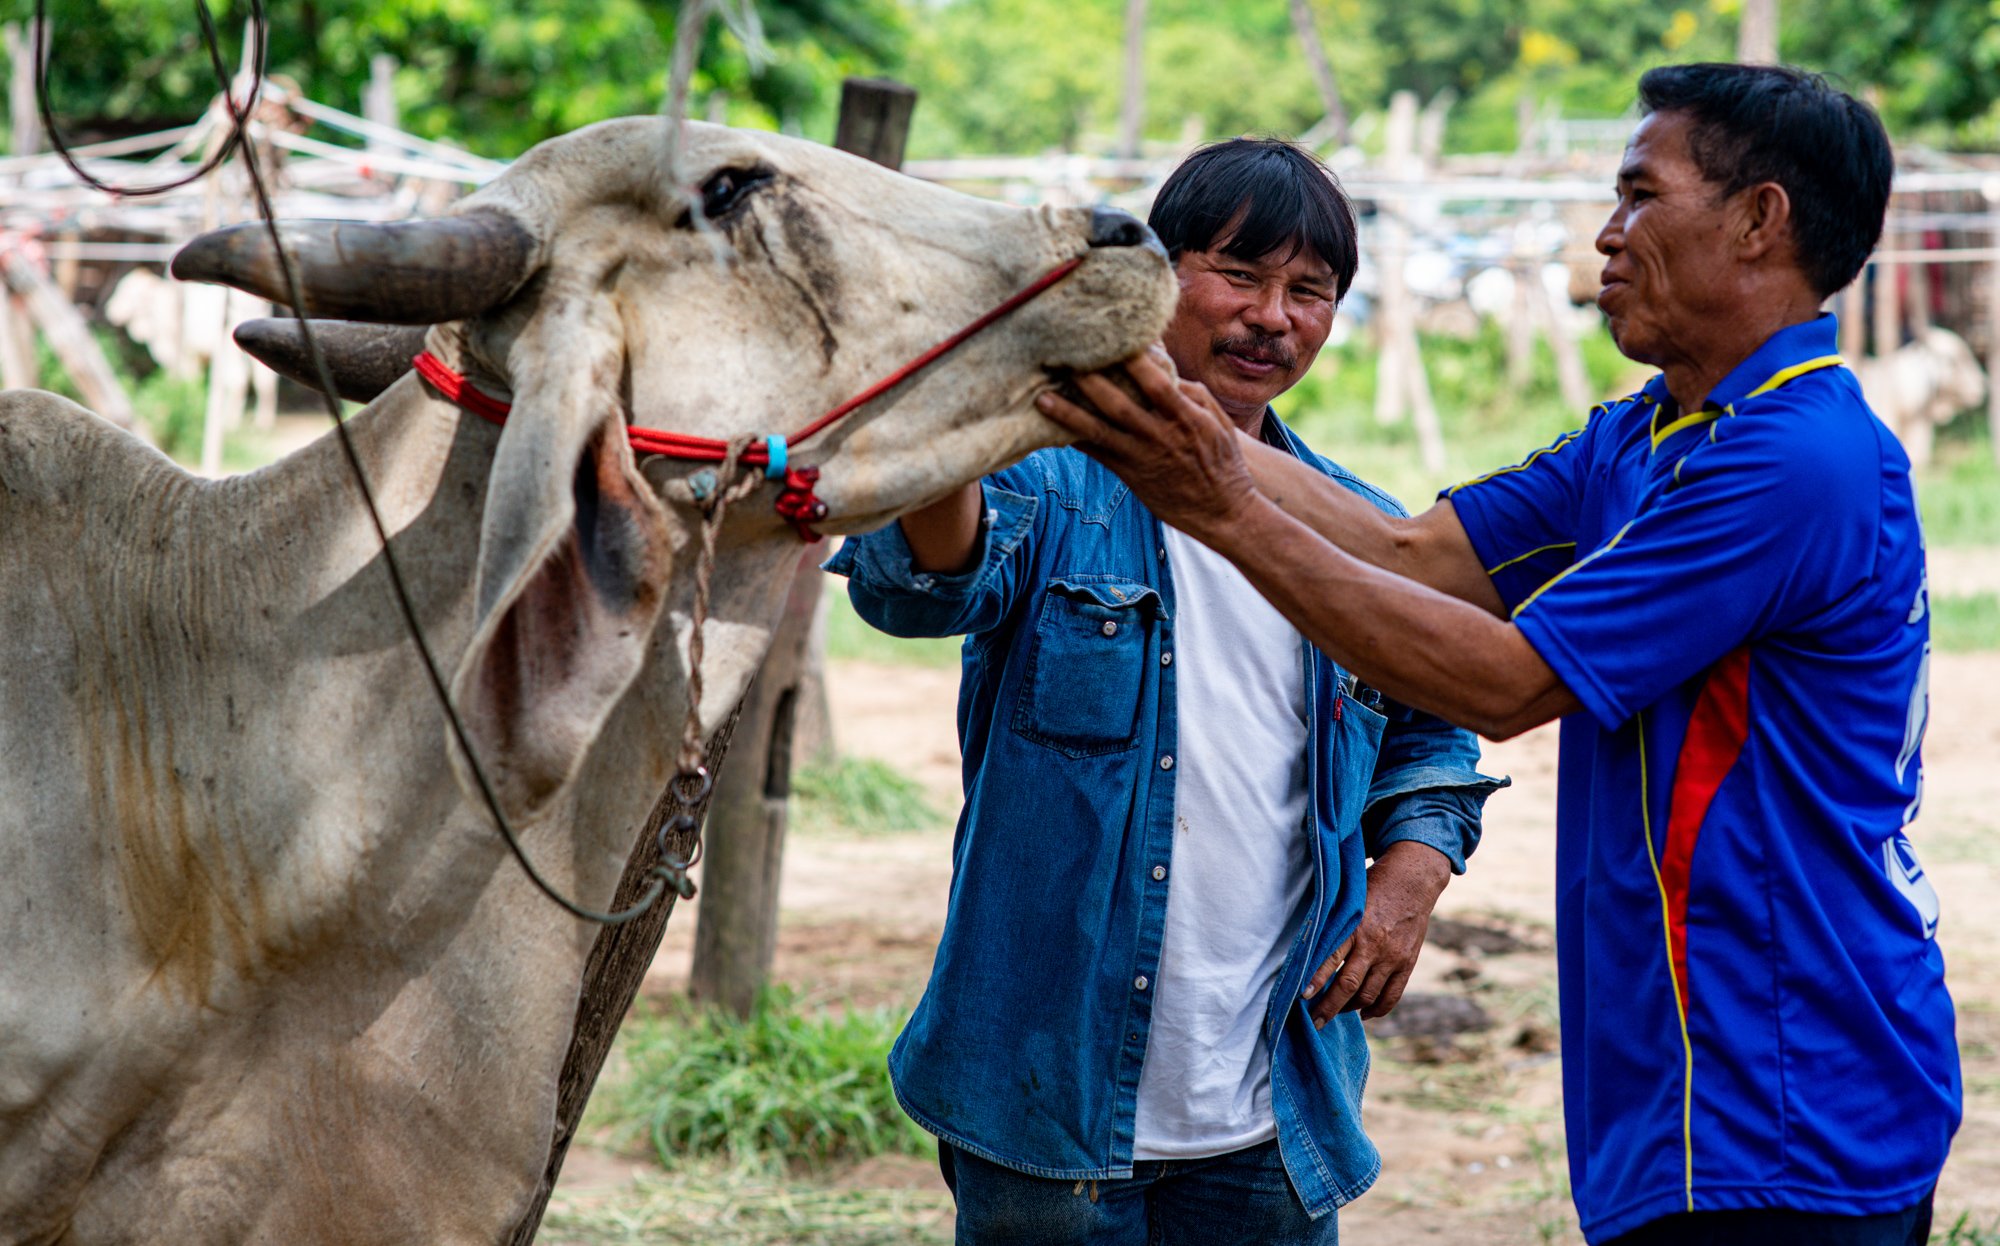 A man inspects a cows teeth at a rural Thai cattle market. Make photo essays